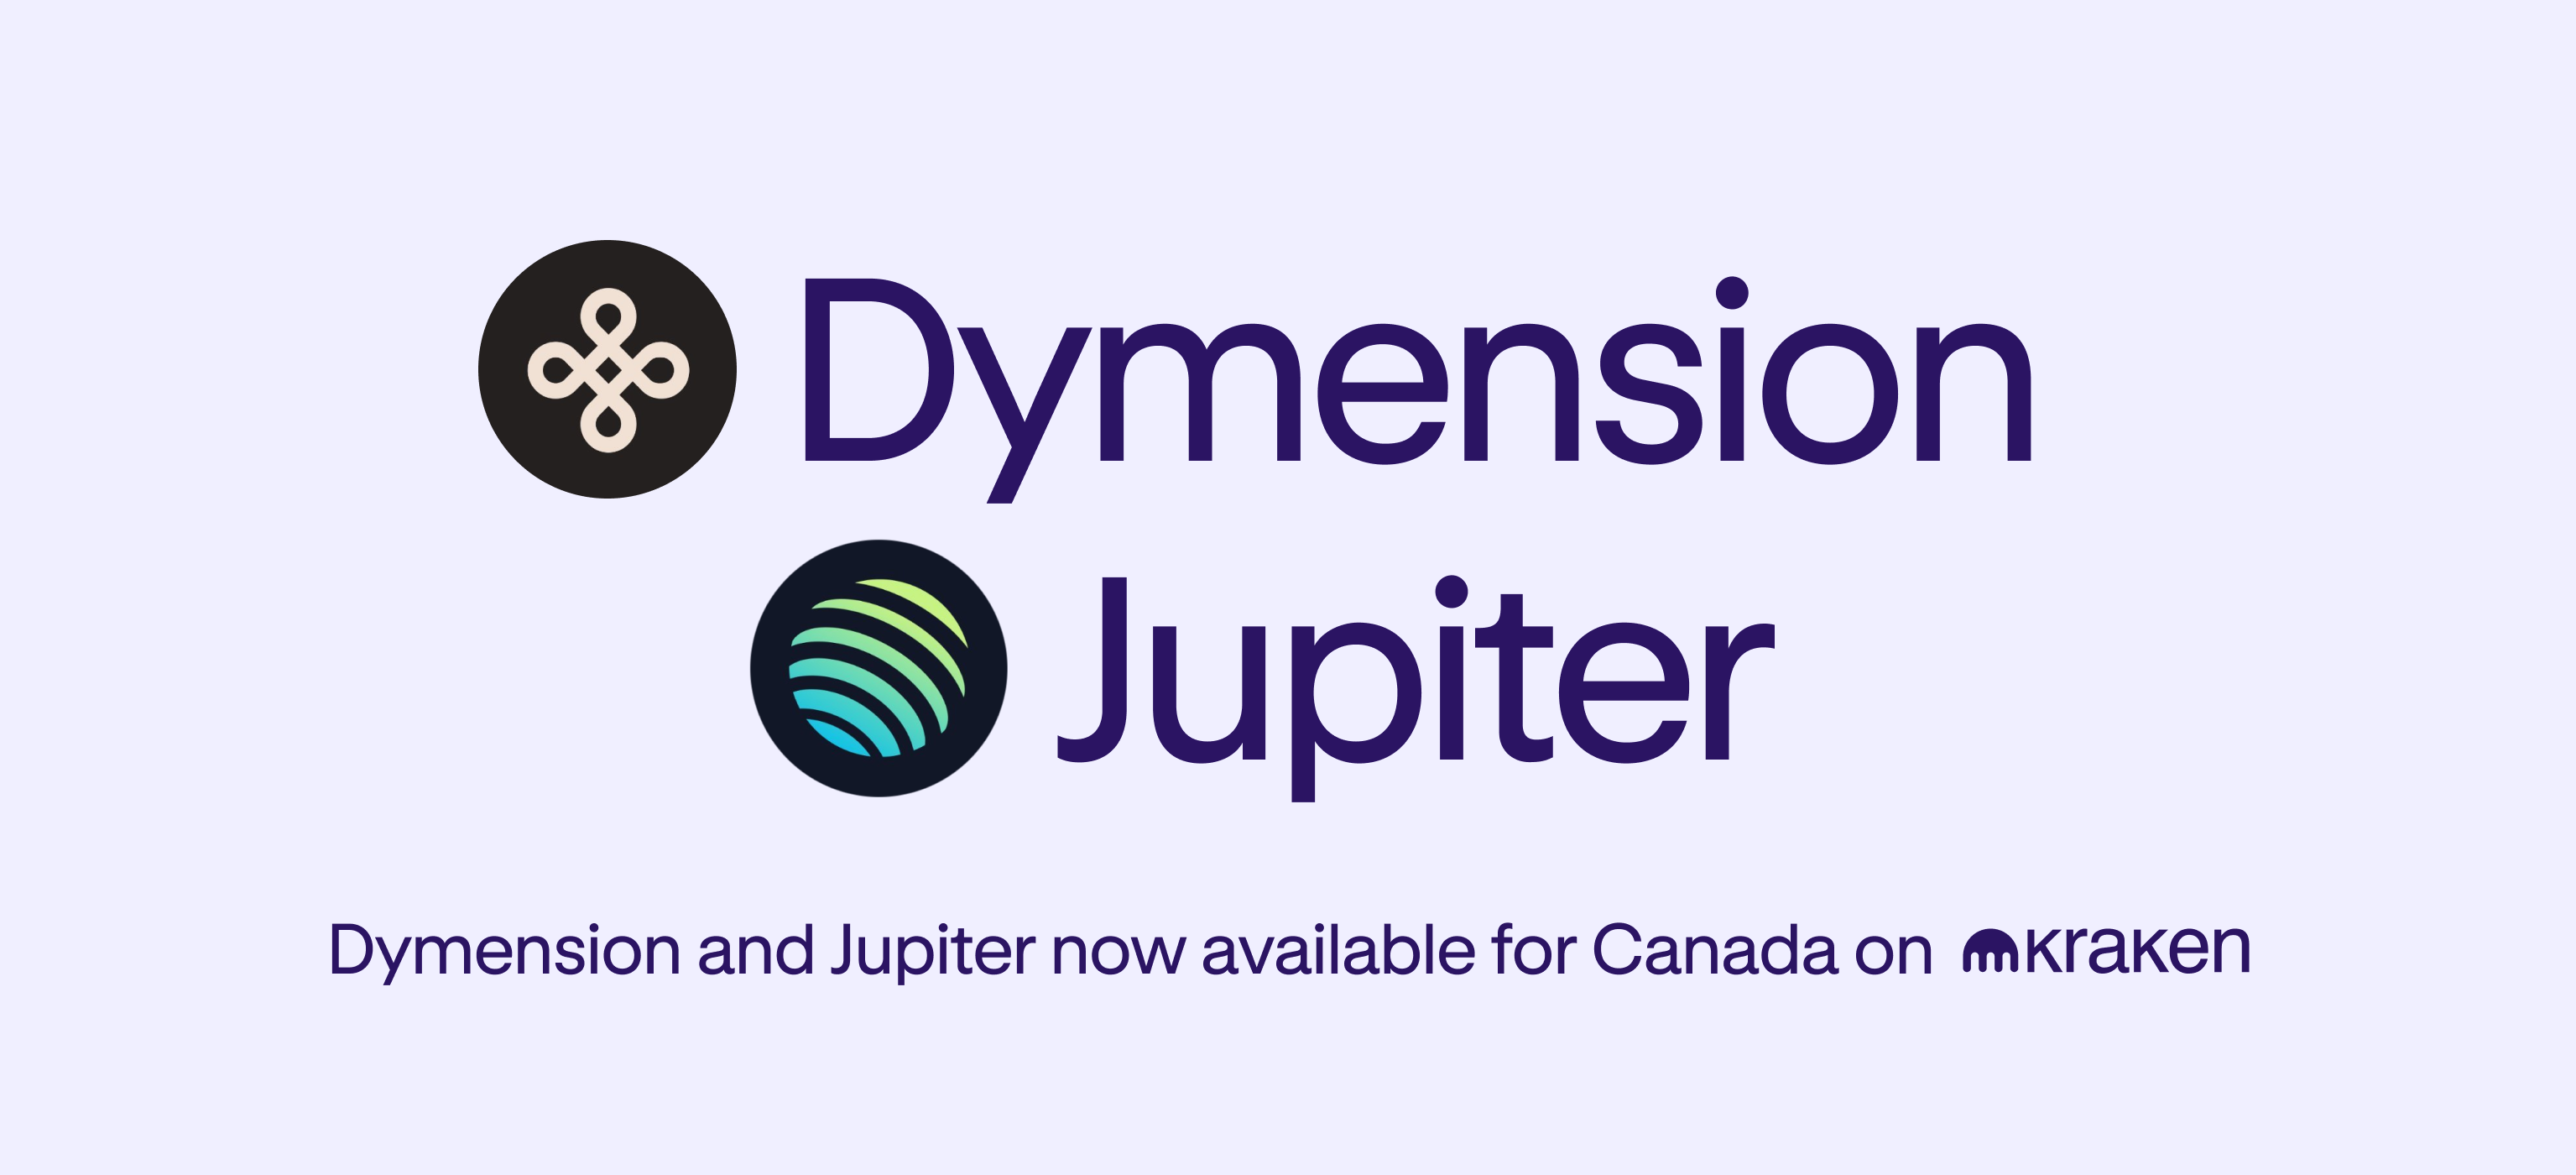 Οι συναλλαγές για Dymension (DYM) και Jupiter (JUP) ξεκινούν τώρα στον Καναδά